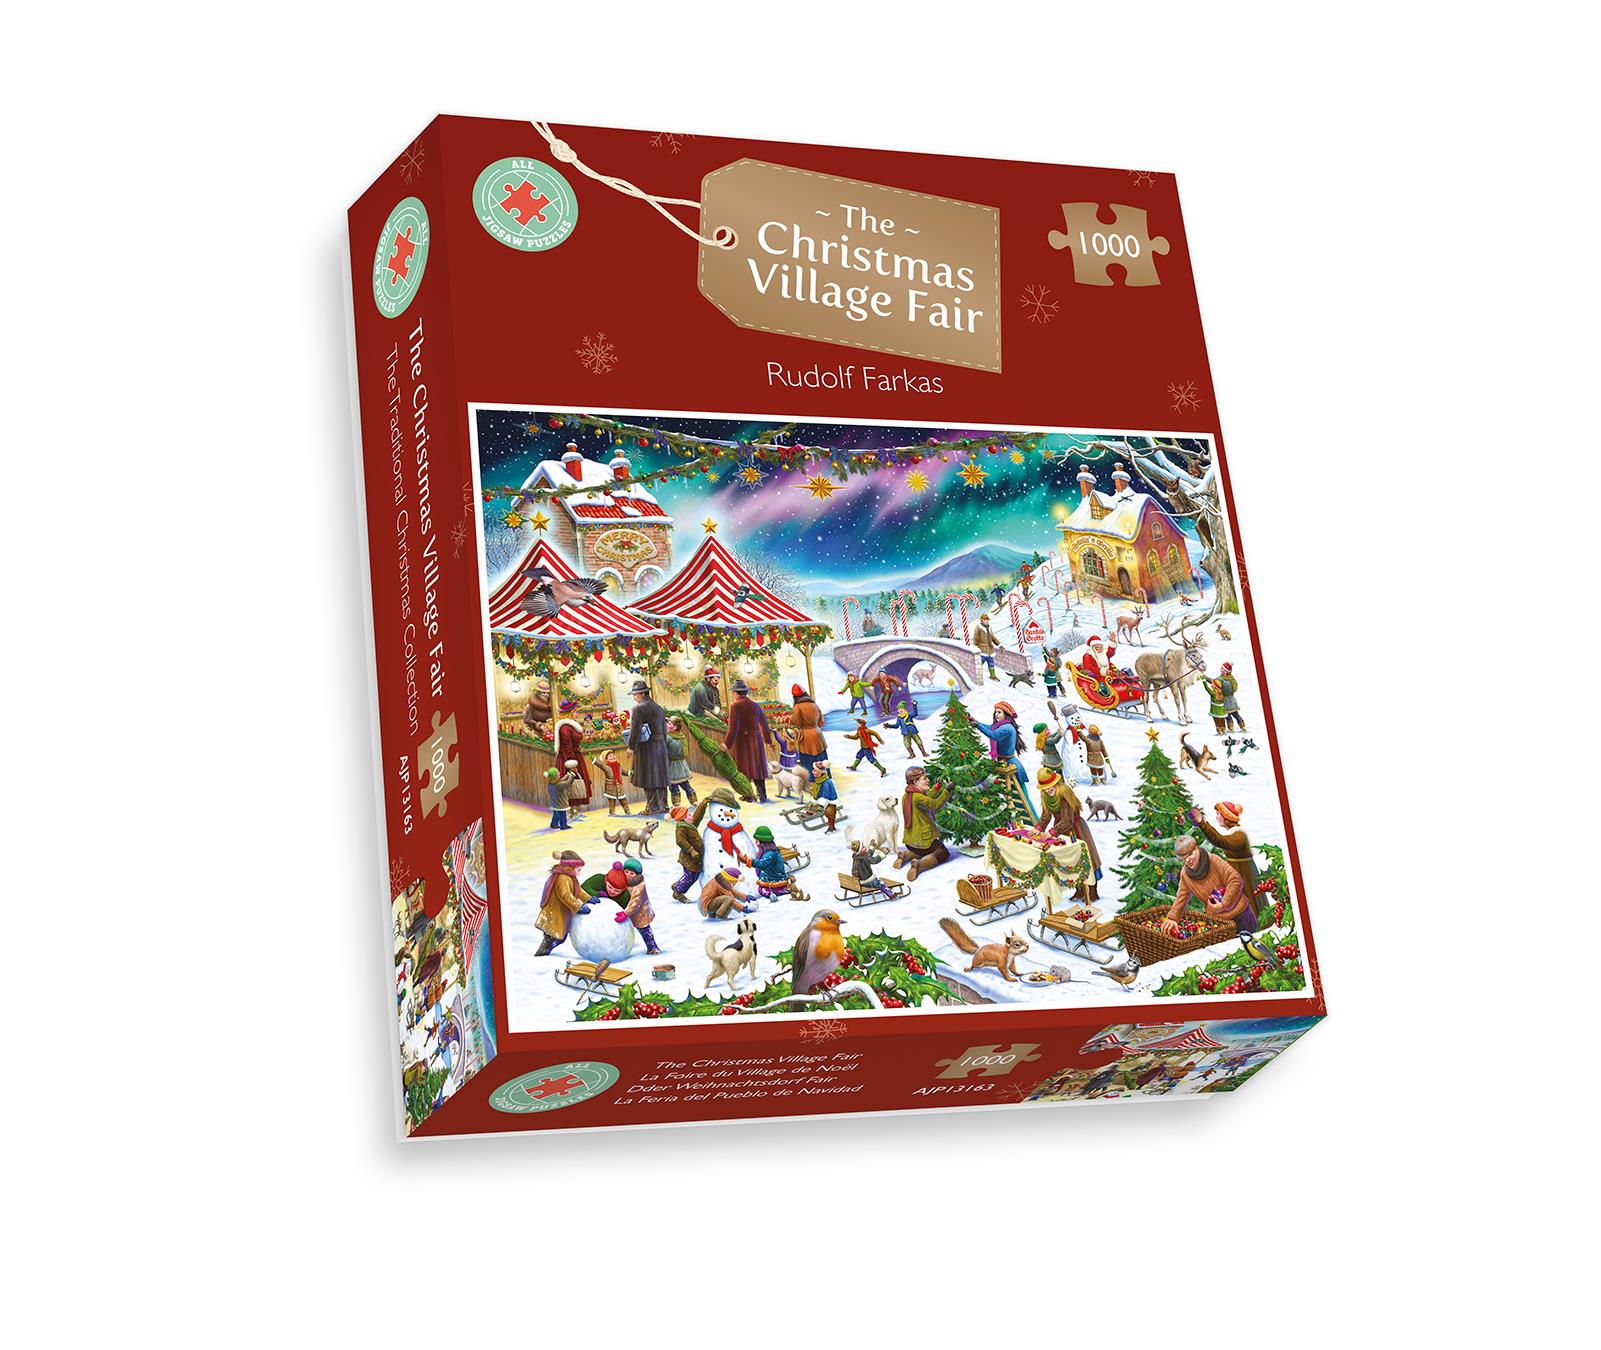 Christmas Village Fair - Rudolf Farkas 1000 Piece Jigsaw Puzzle